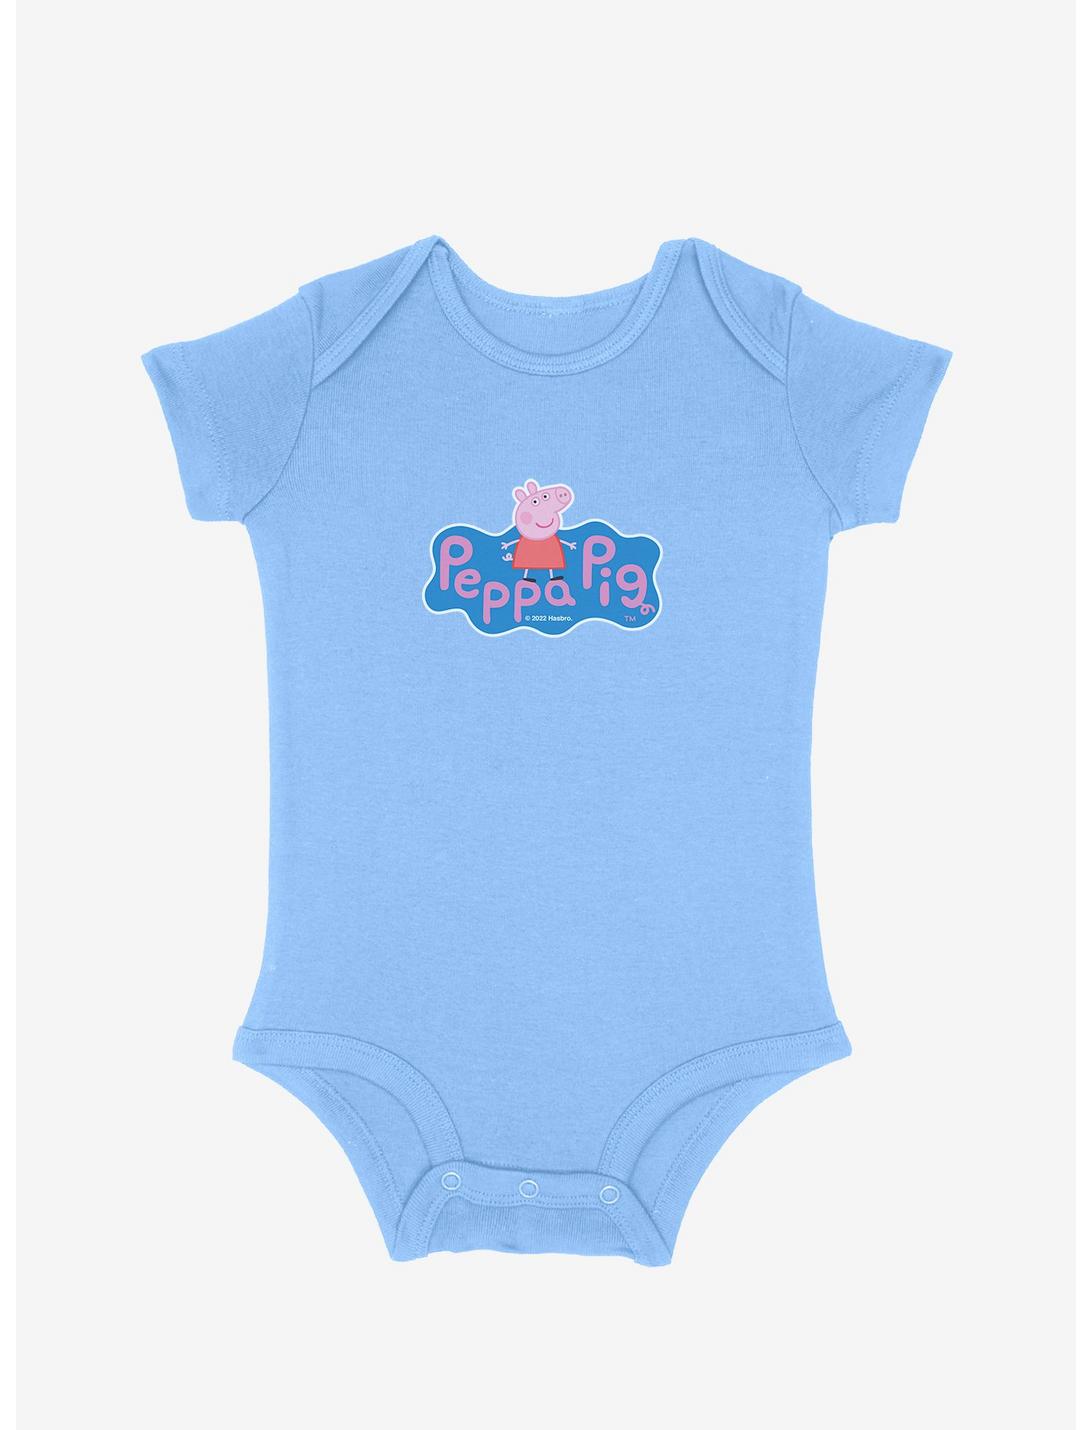 Peppa Pig Portrait Logo Infant Bodysuit, SKY BLUE, hi-res